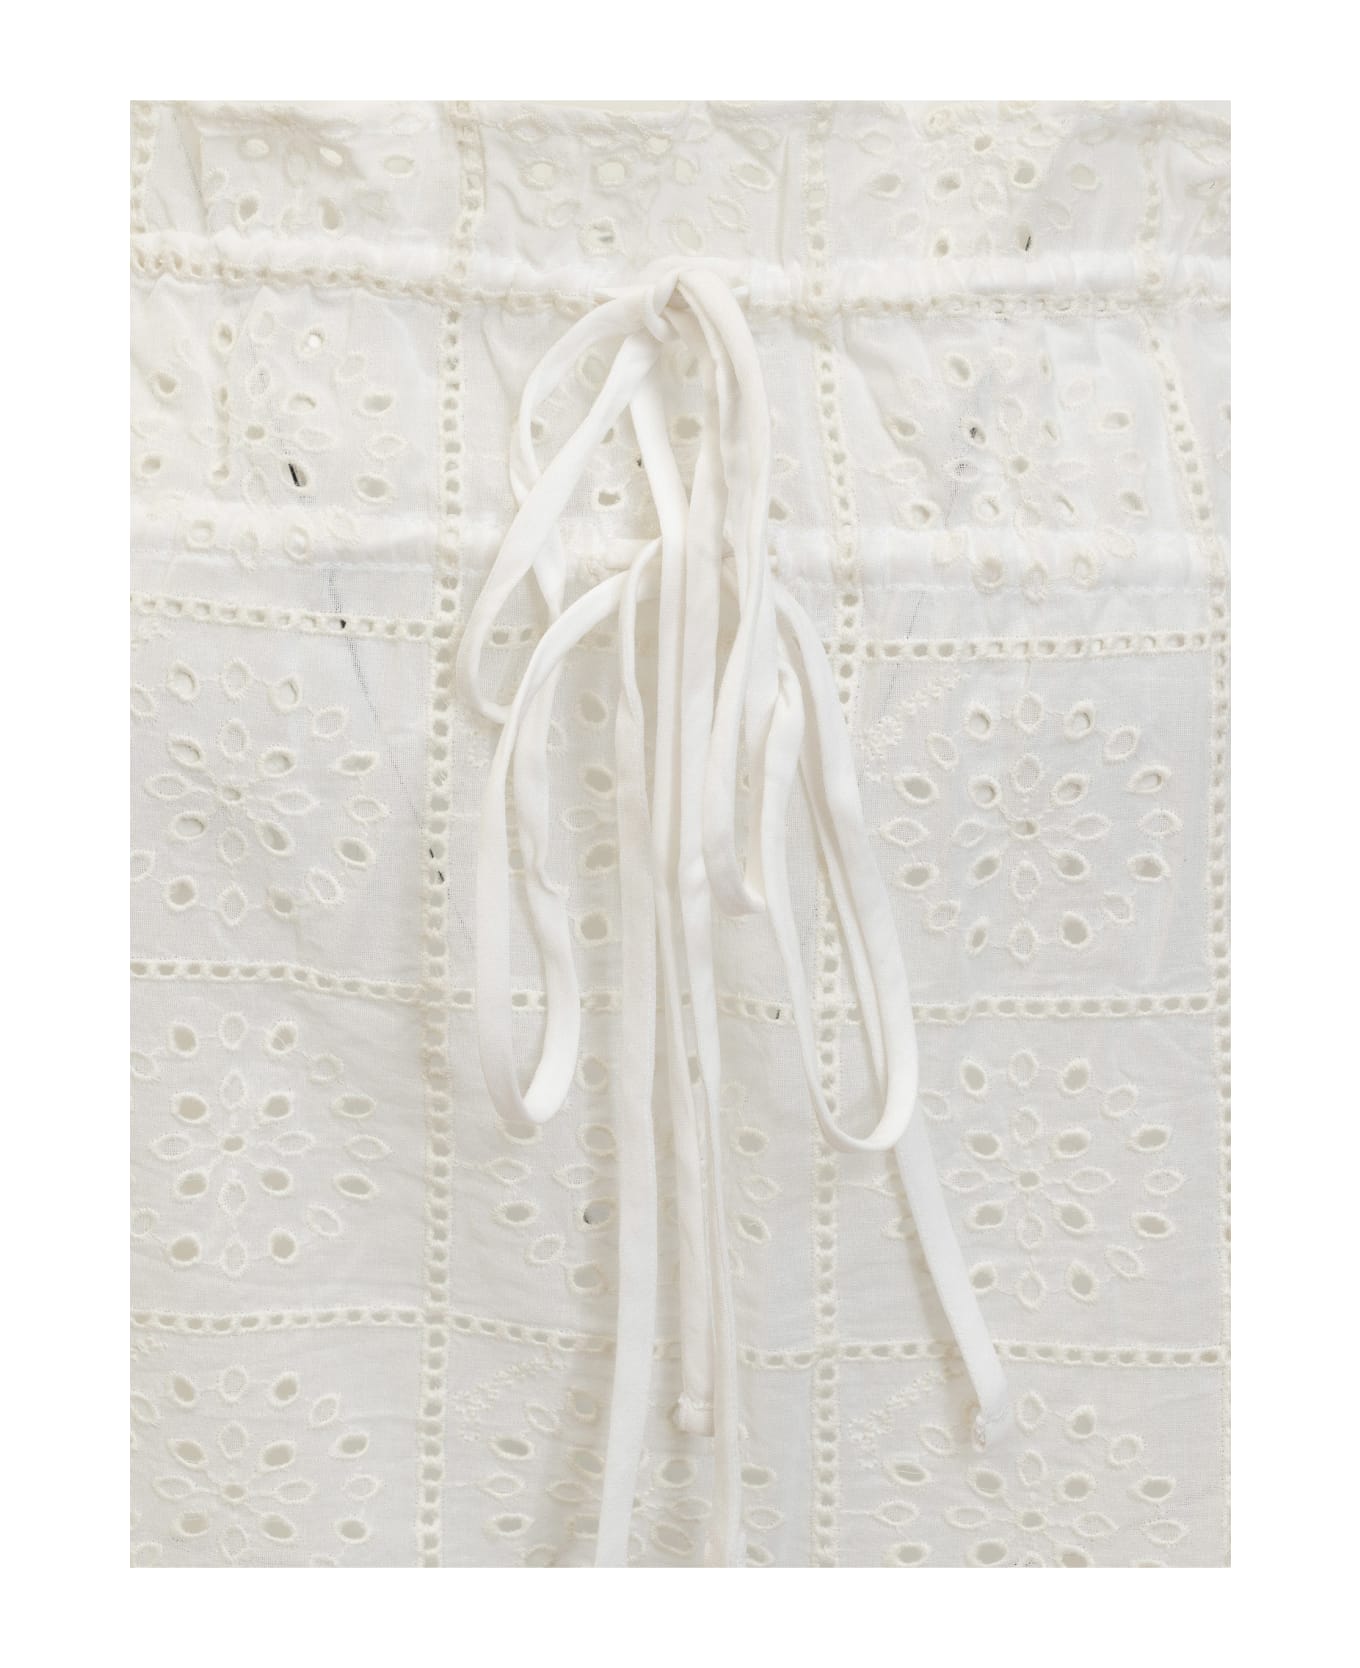 Ganni Anglaise Strap Dress - BRIGHT WHITE